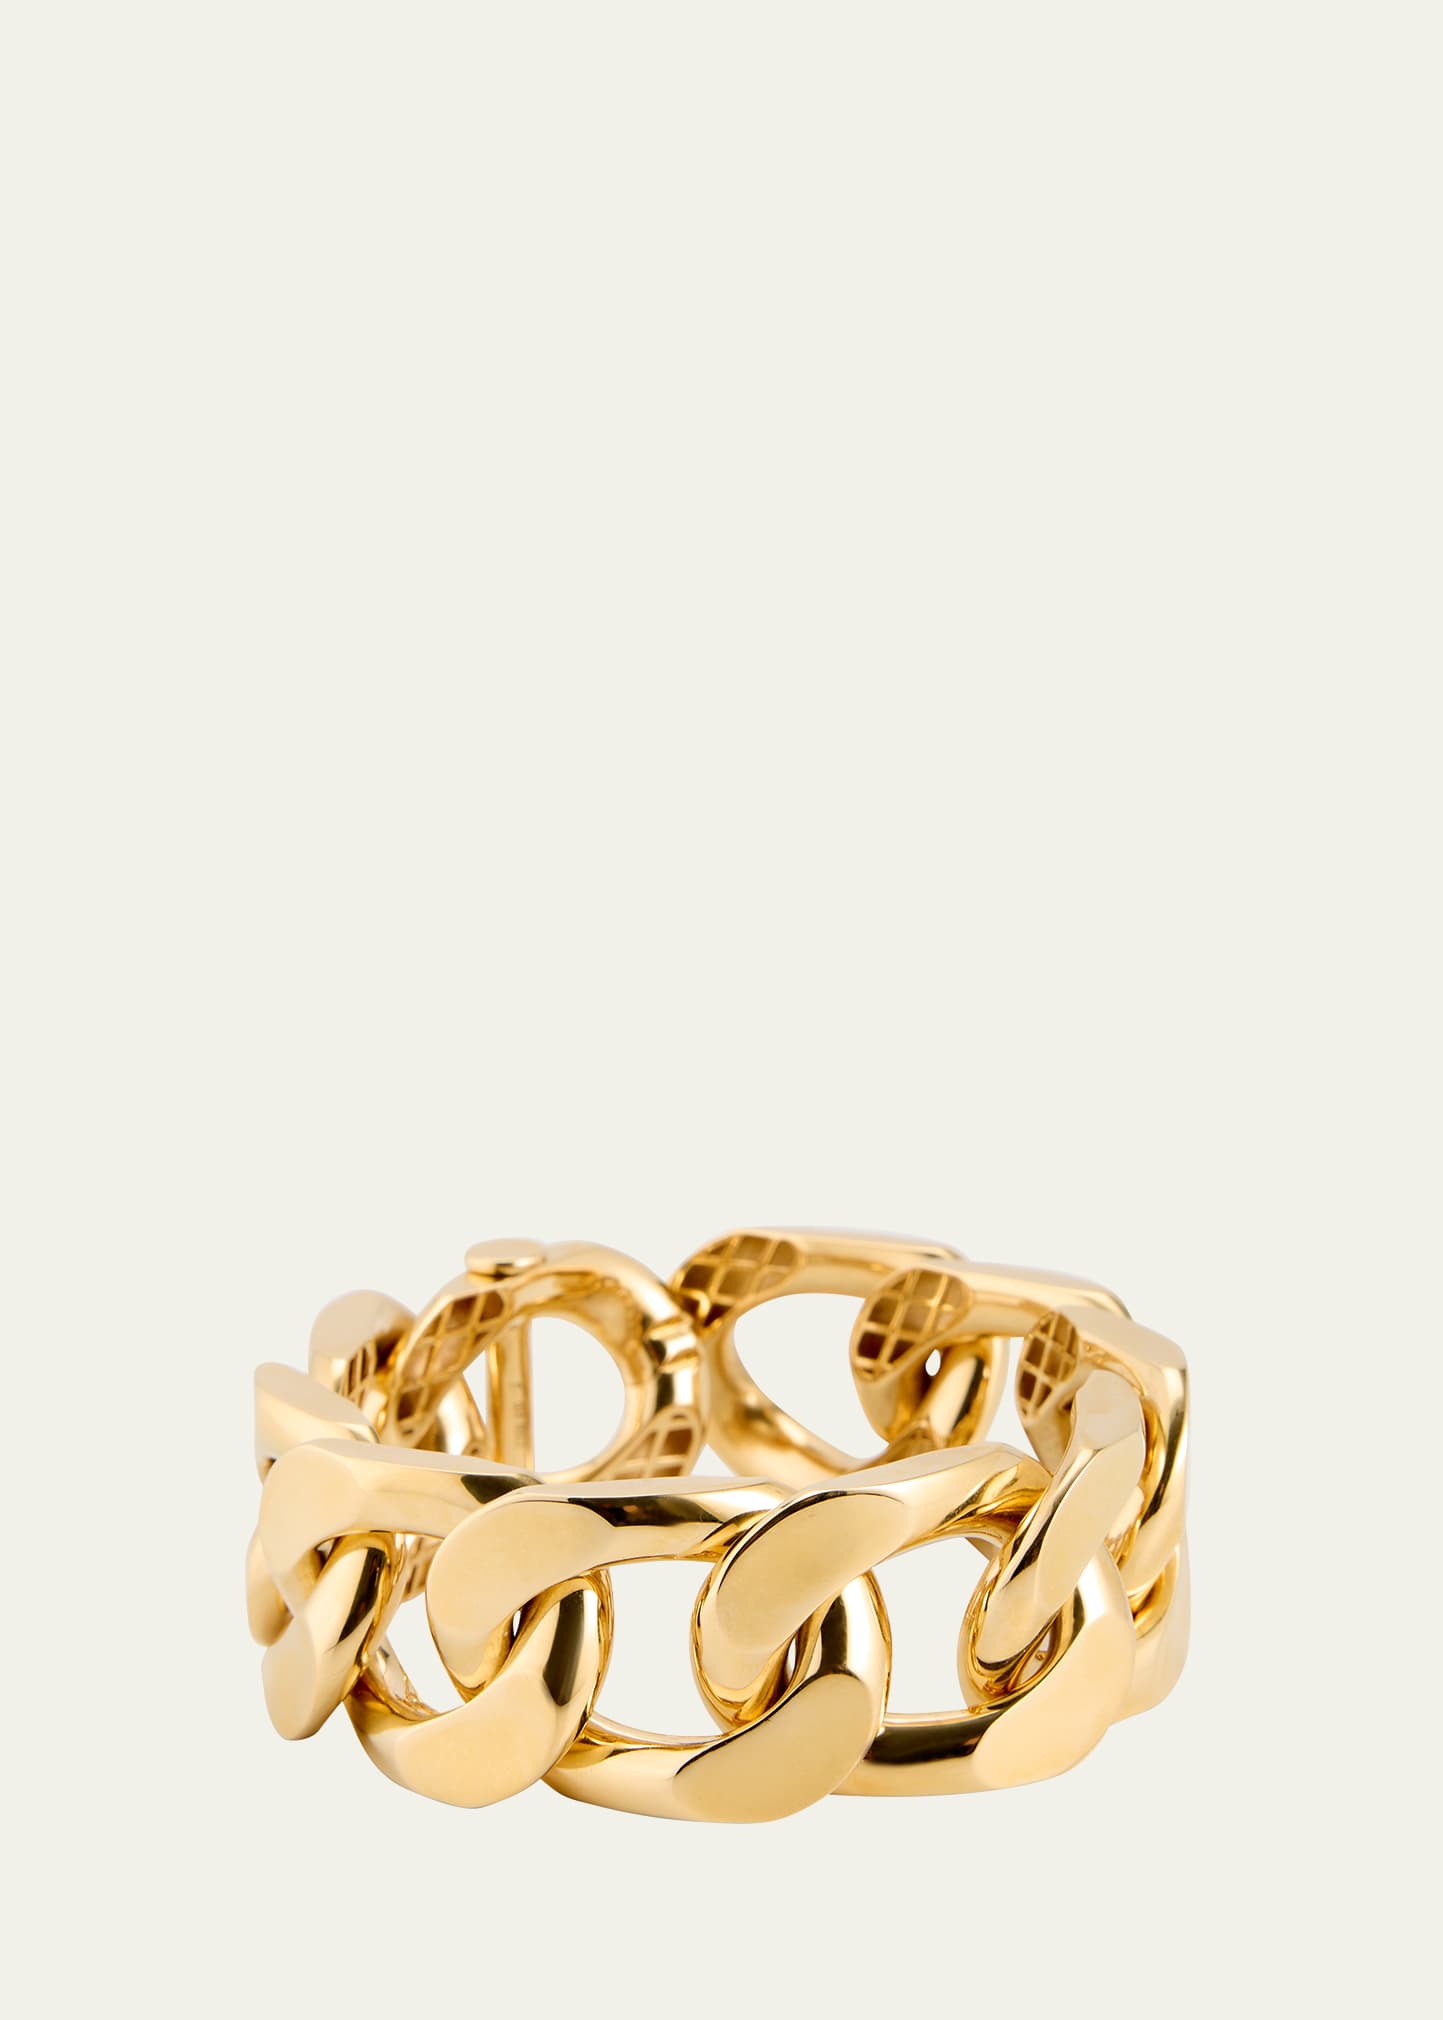 Engelbert New York 66 Bracelet, Big, In Yellow Gold, 10 Links